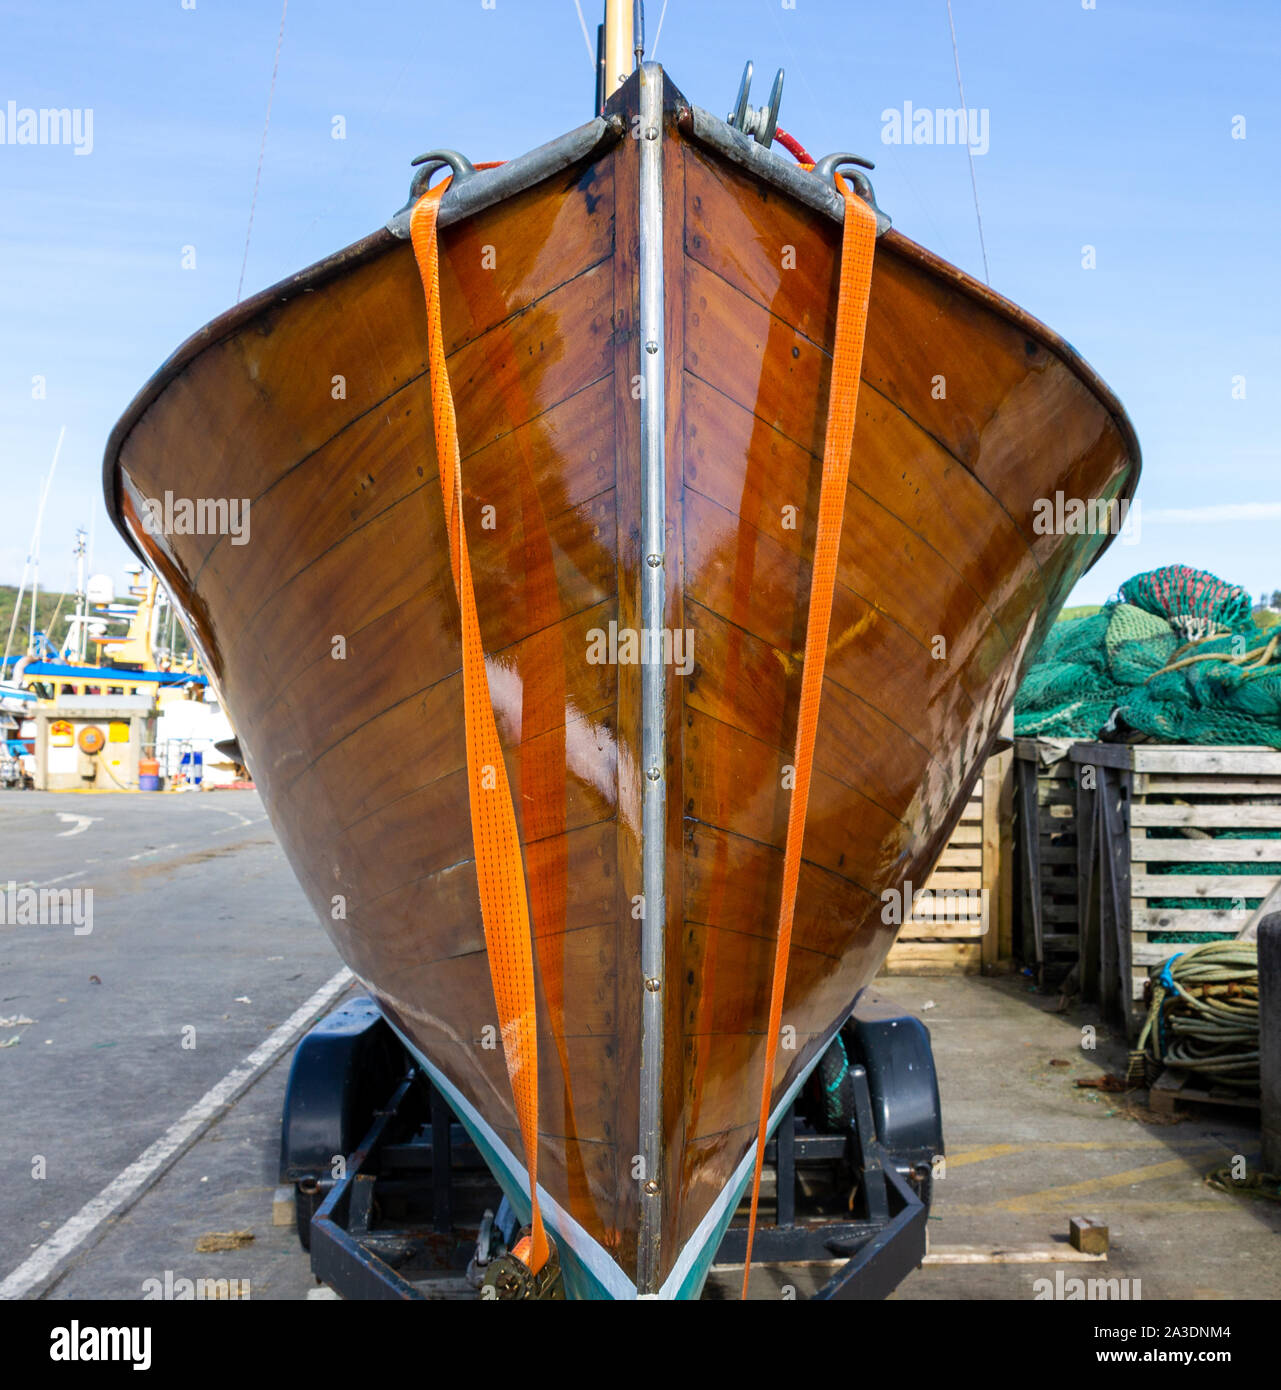 Platelage en bois verni sur une coque de bateau construit en bois franc Banque D'Images